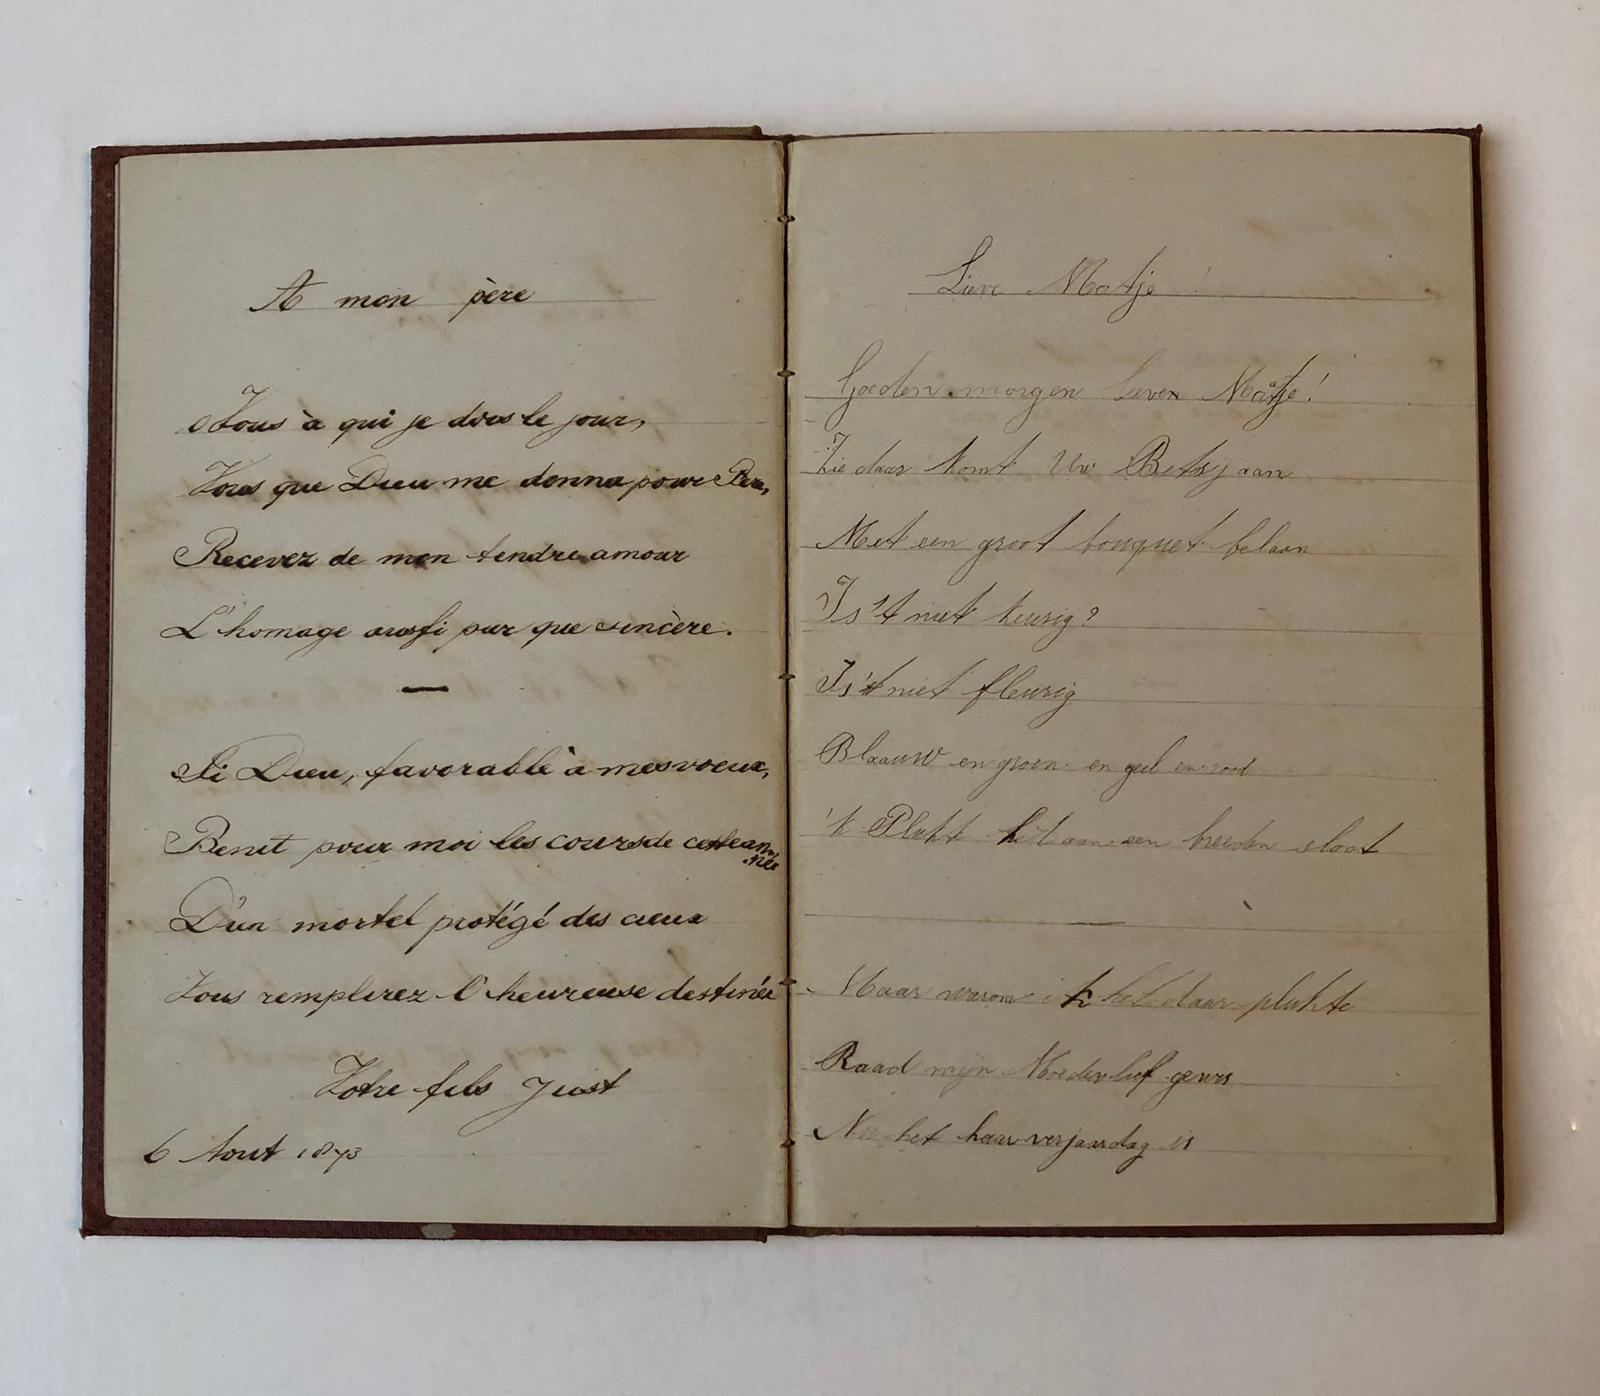  - NETSCHER Poeziealbum van het echtpaar F.H.J. Netscher (1817-1878) en Cath. M.J. Netscher (1824-1903), met verzen van hun kinderen: Frans C.J. (geb. 1864), Betsy (geb. 1865), Henri (geb. 1859) en Just (geb. 1862), 1871-1874. Manuscript, 1 deel, geb. (in hoesje).